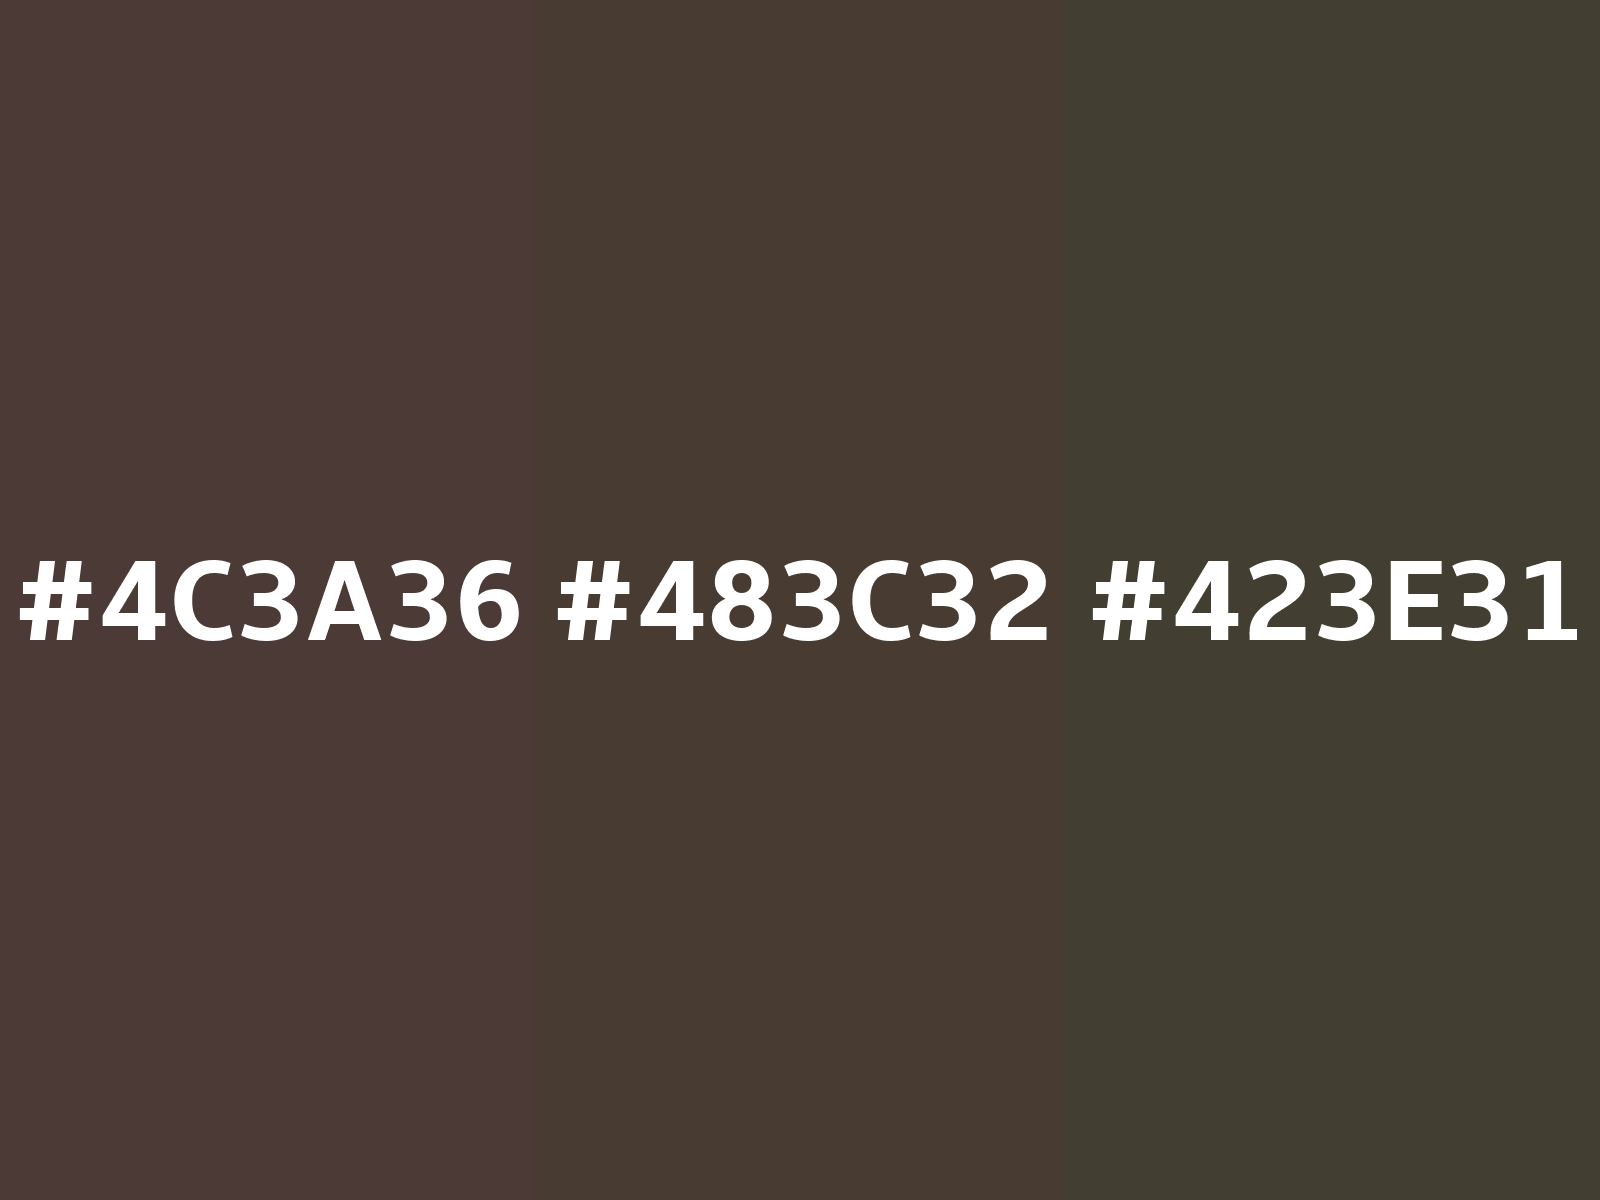 Walmart distinct natural taupe - #c3beb6 color code hexadecimal - 11154